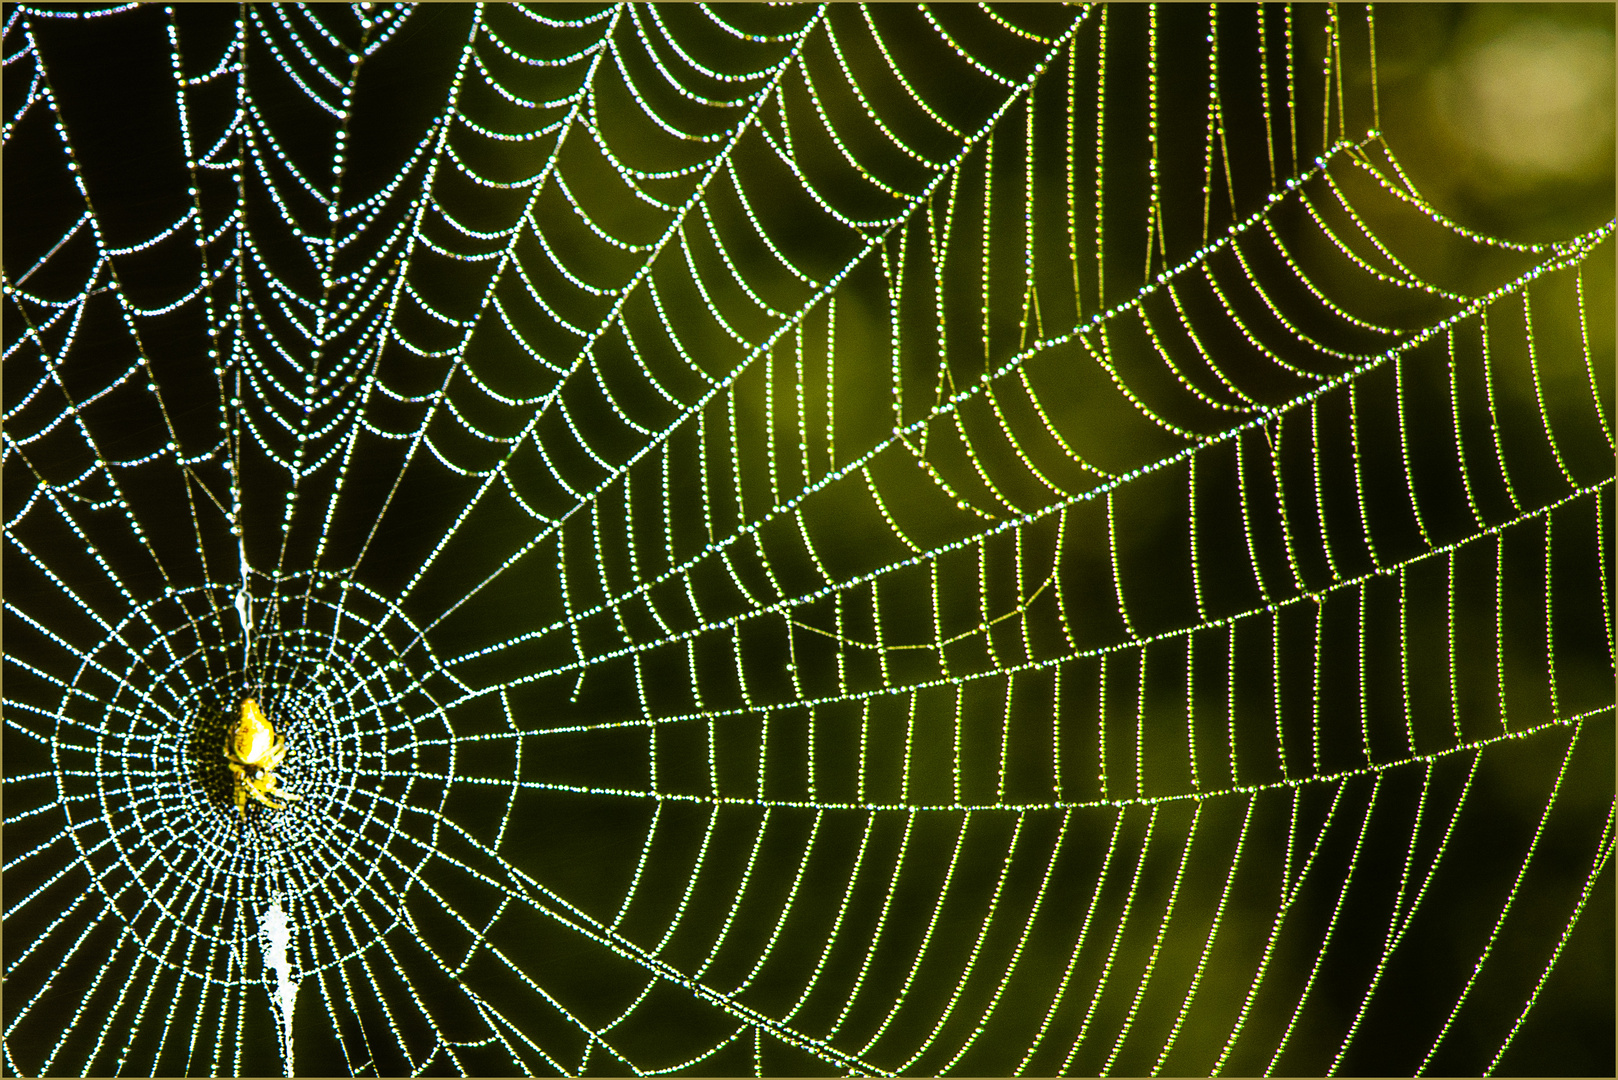 Spinne und Netzt nach einer feuchten und kalten Nacht